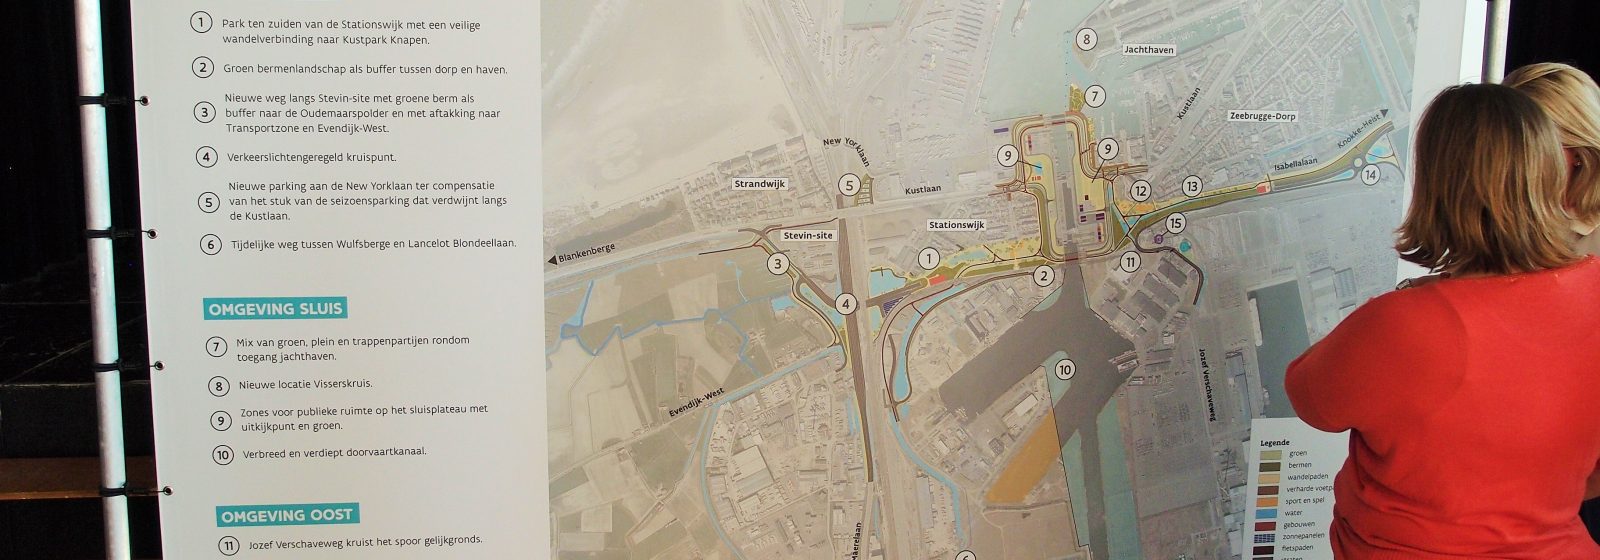 Infomoment eindbeeld complex project Nieuwe Sluis Zeebrugge